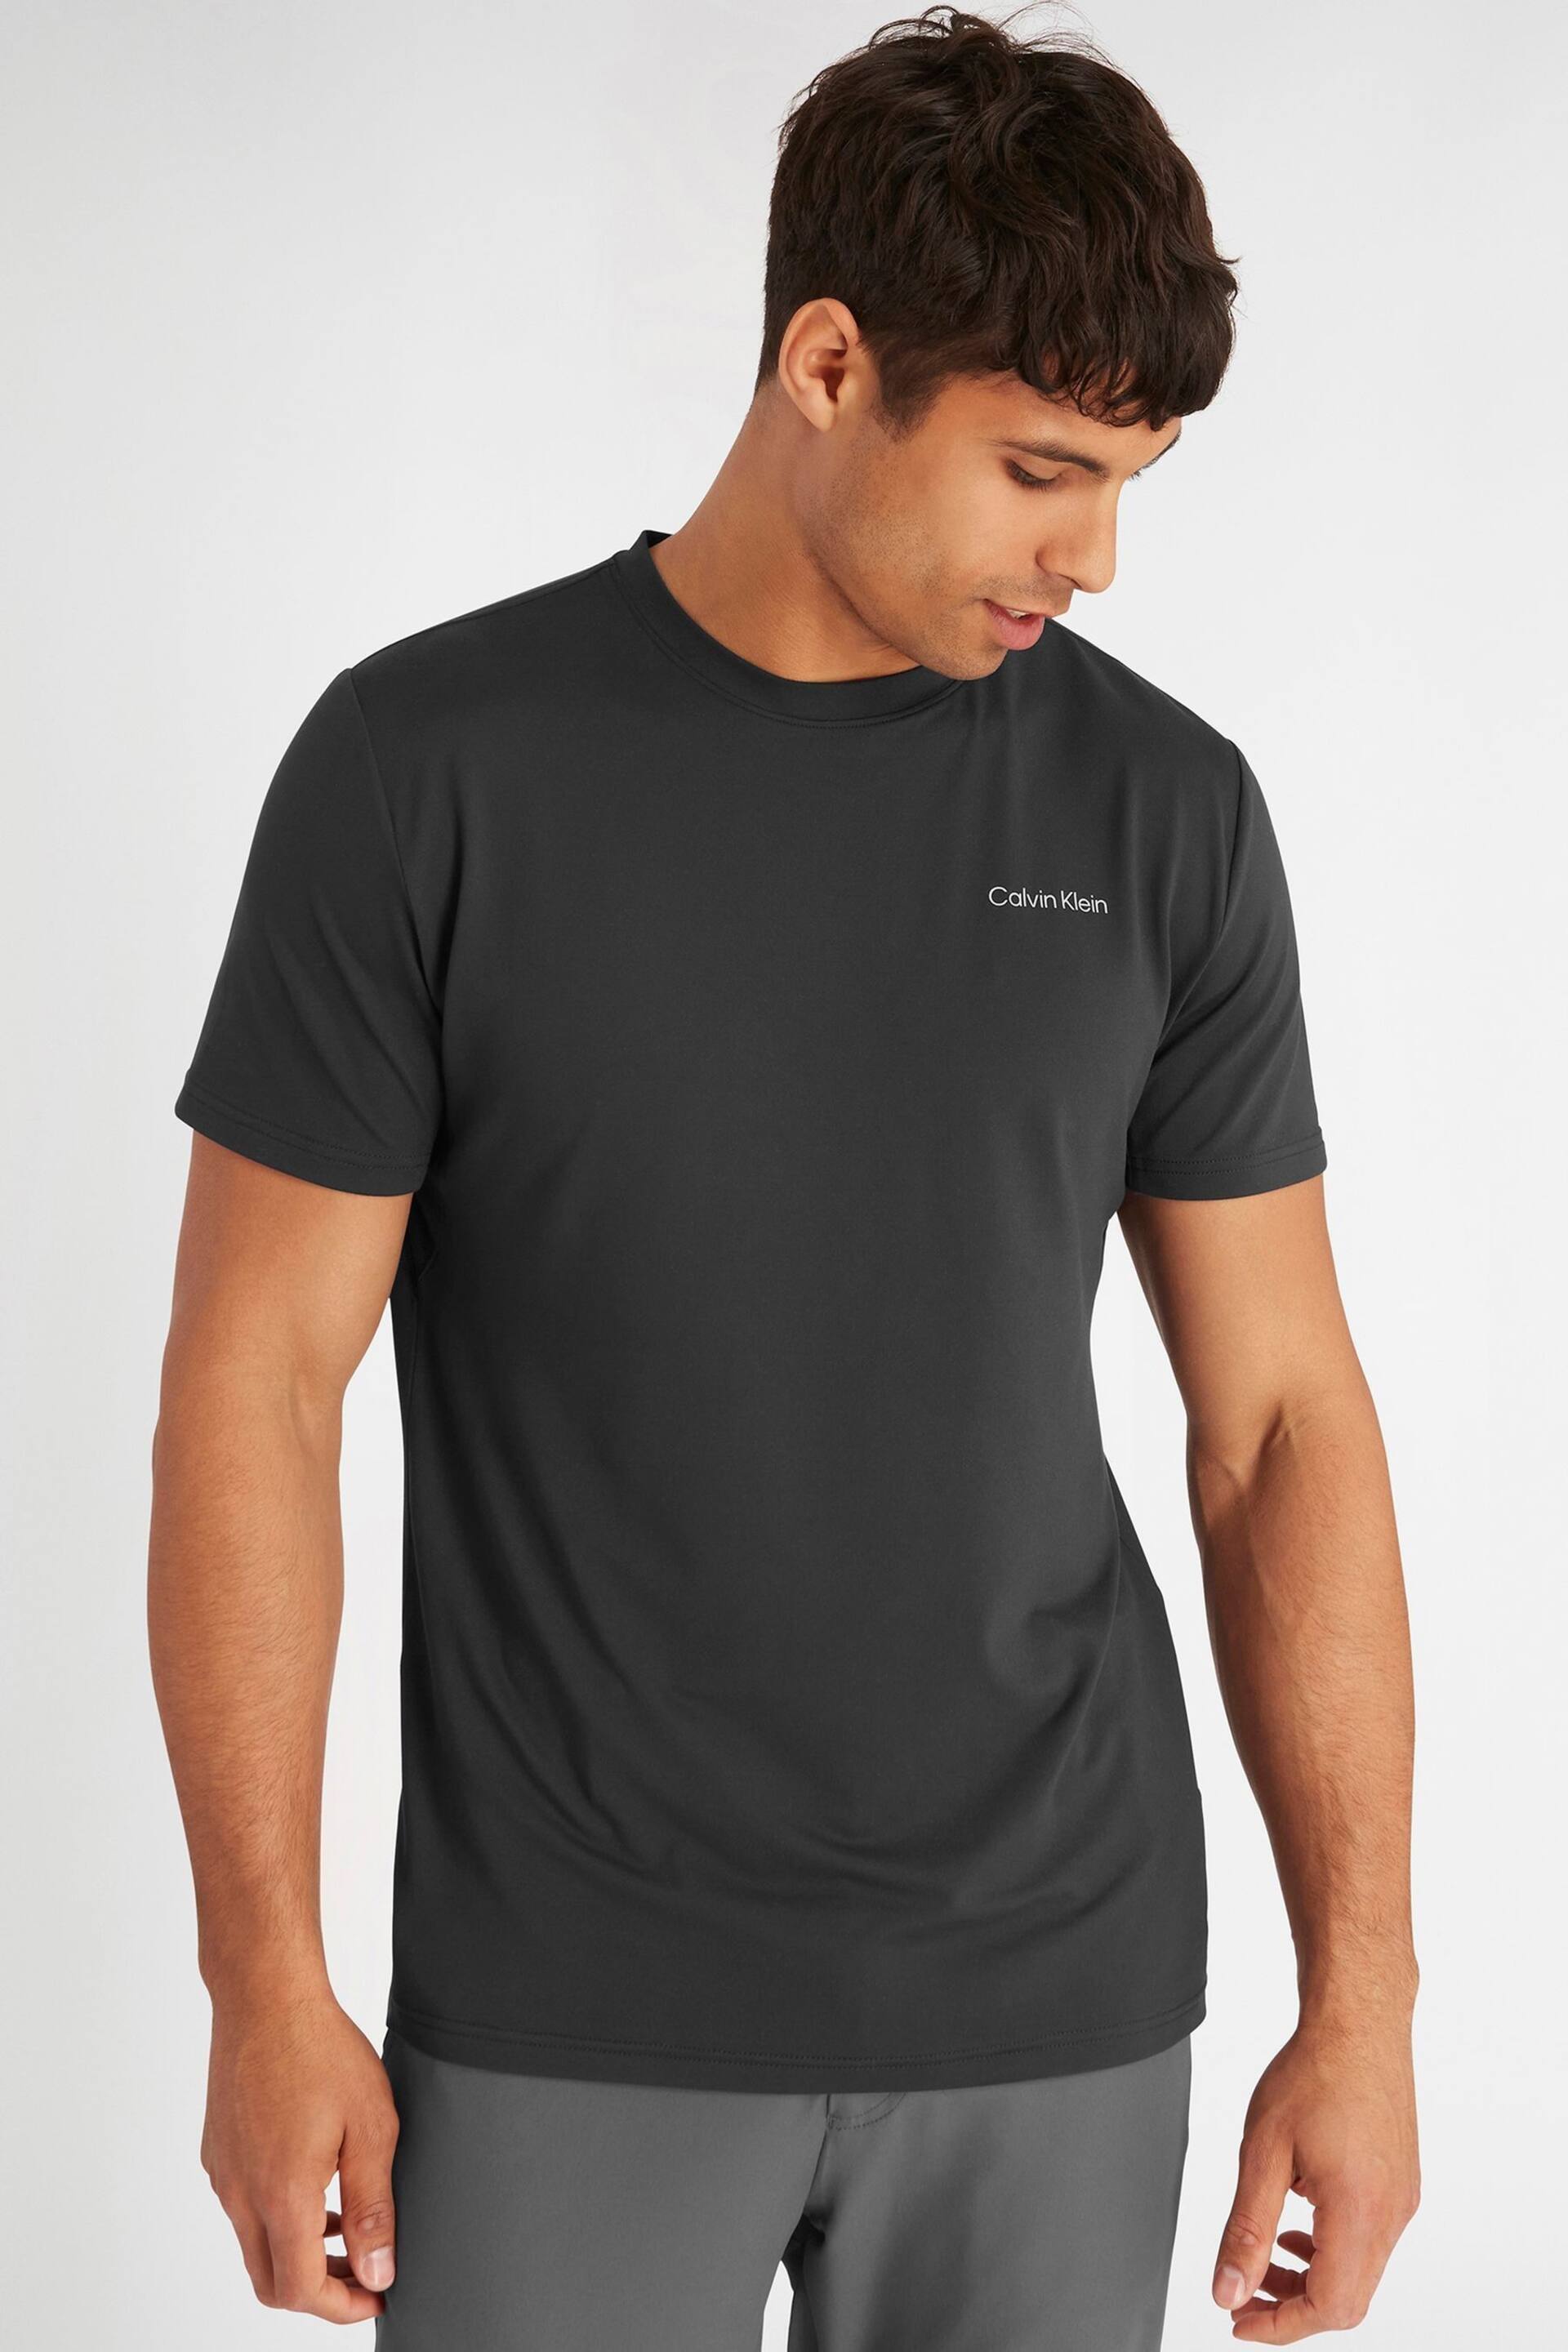 Calvin Klein Golf Newport T-Shirt - Image 2 of 9